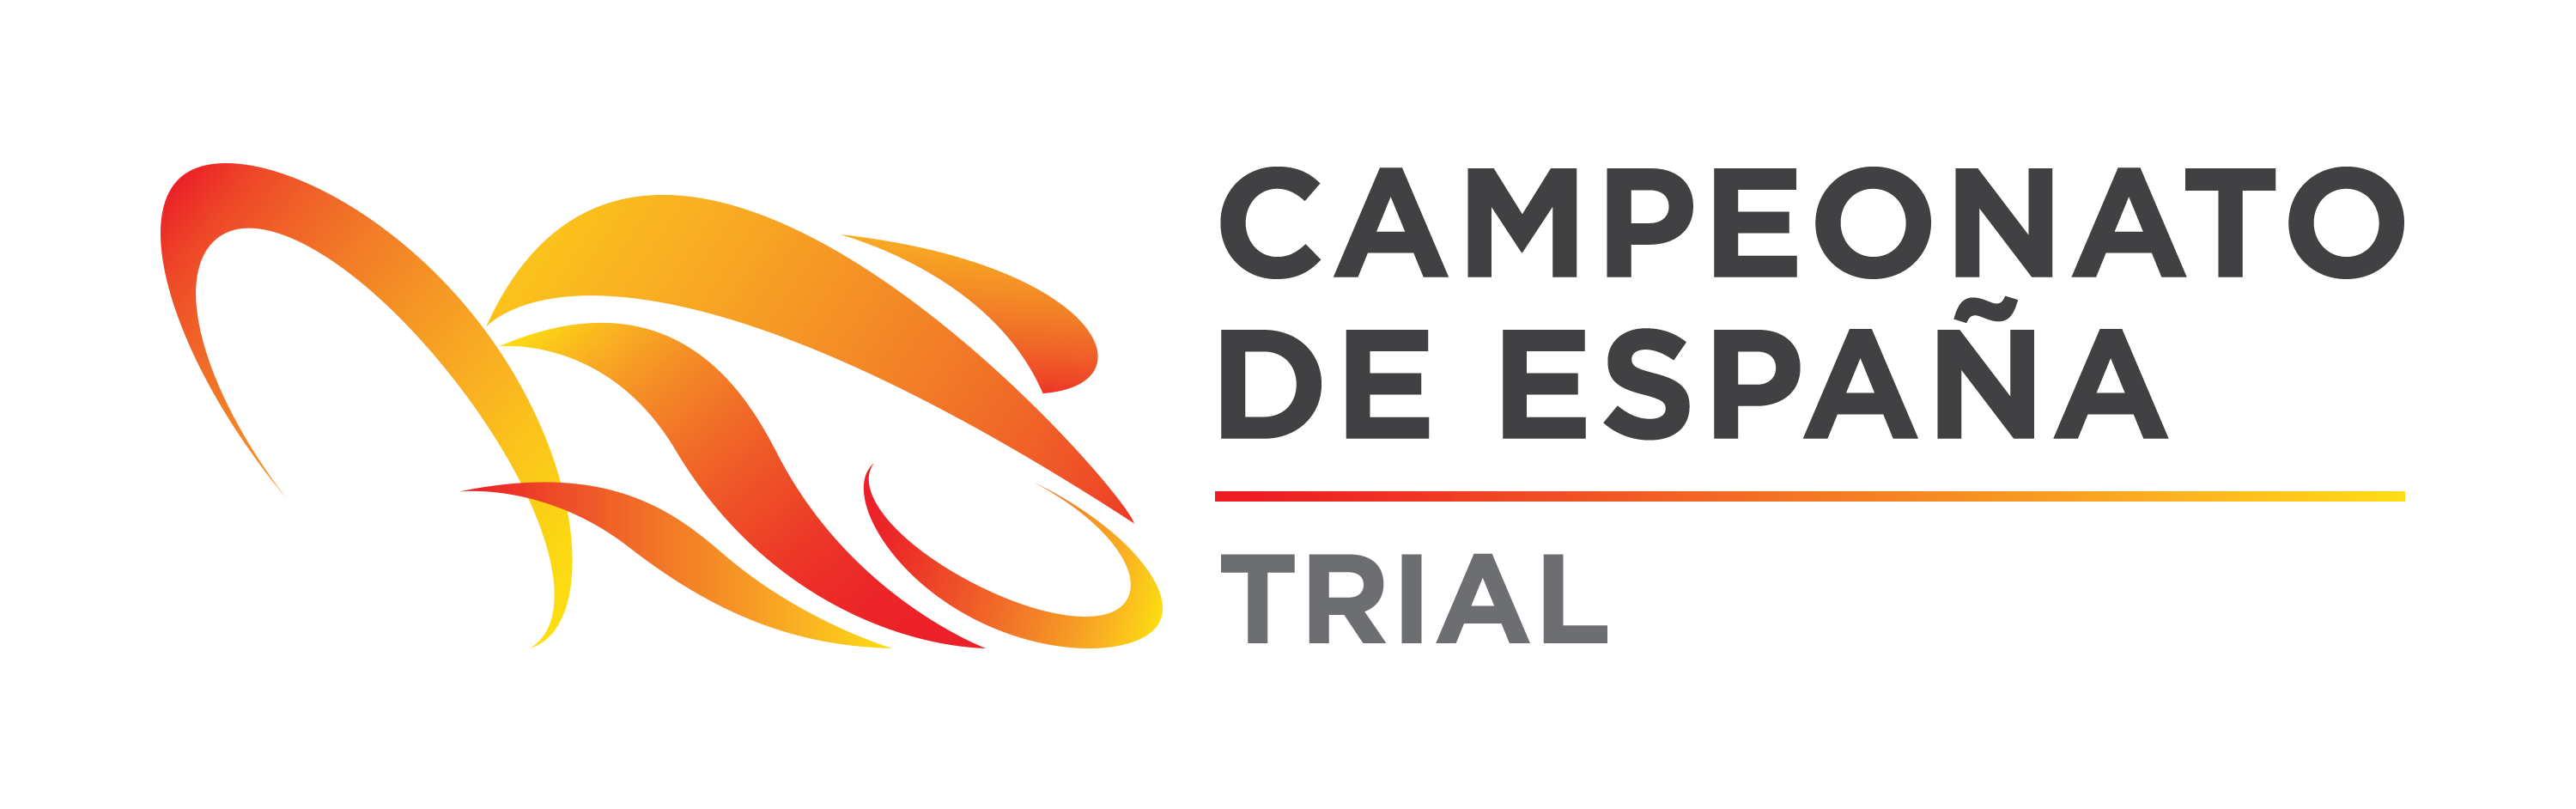 Horarios Campeonato De España Trial Cartagena 2019